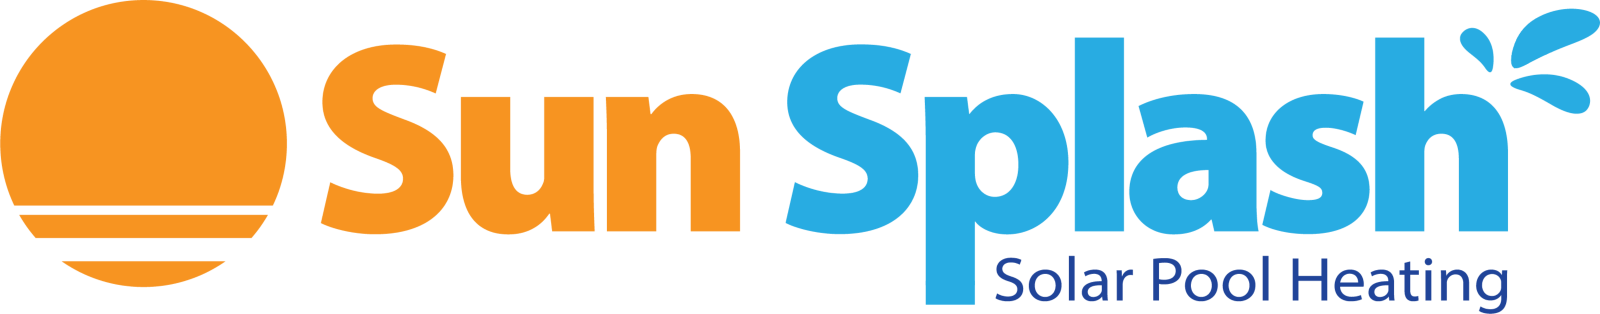 sunsplash logo